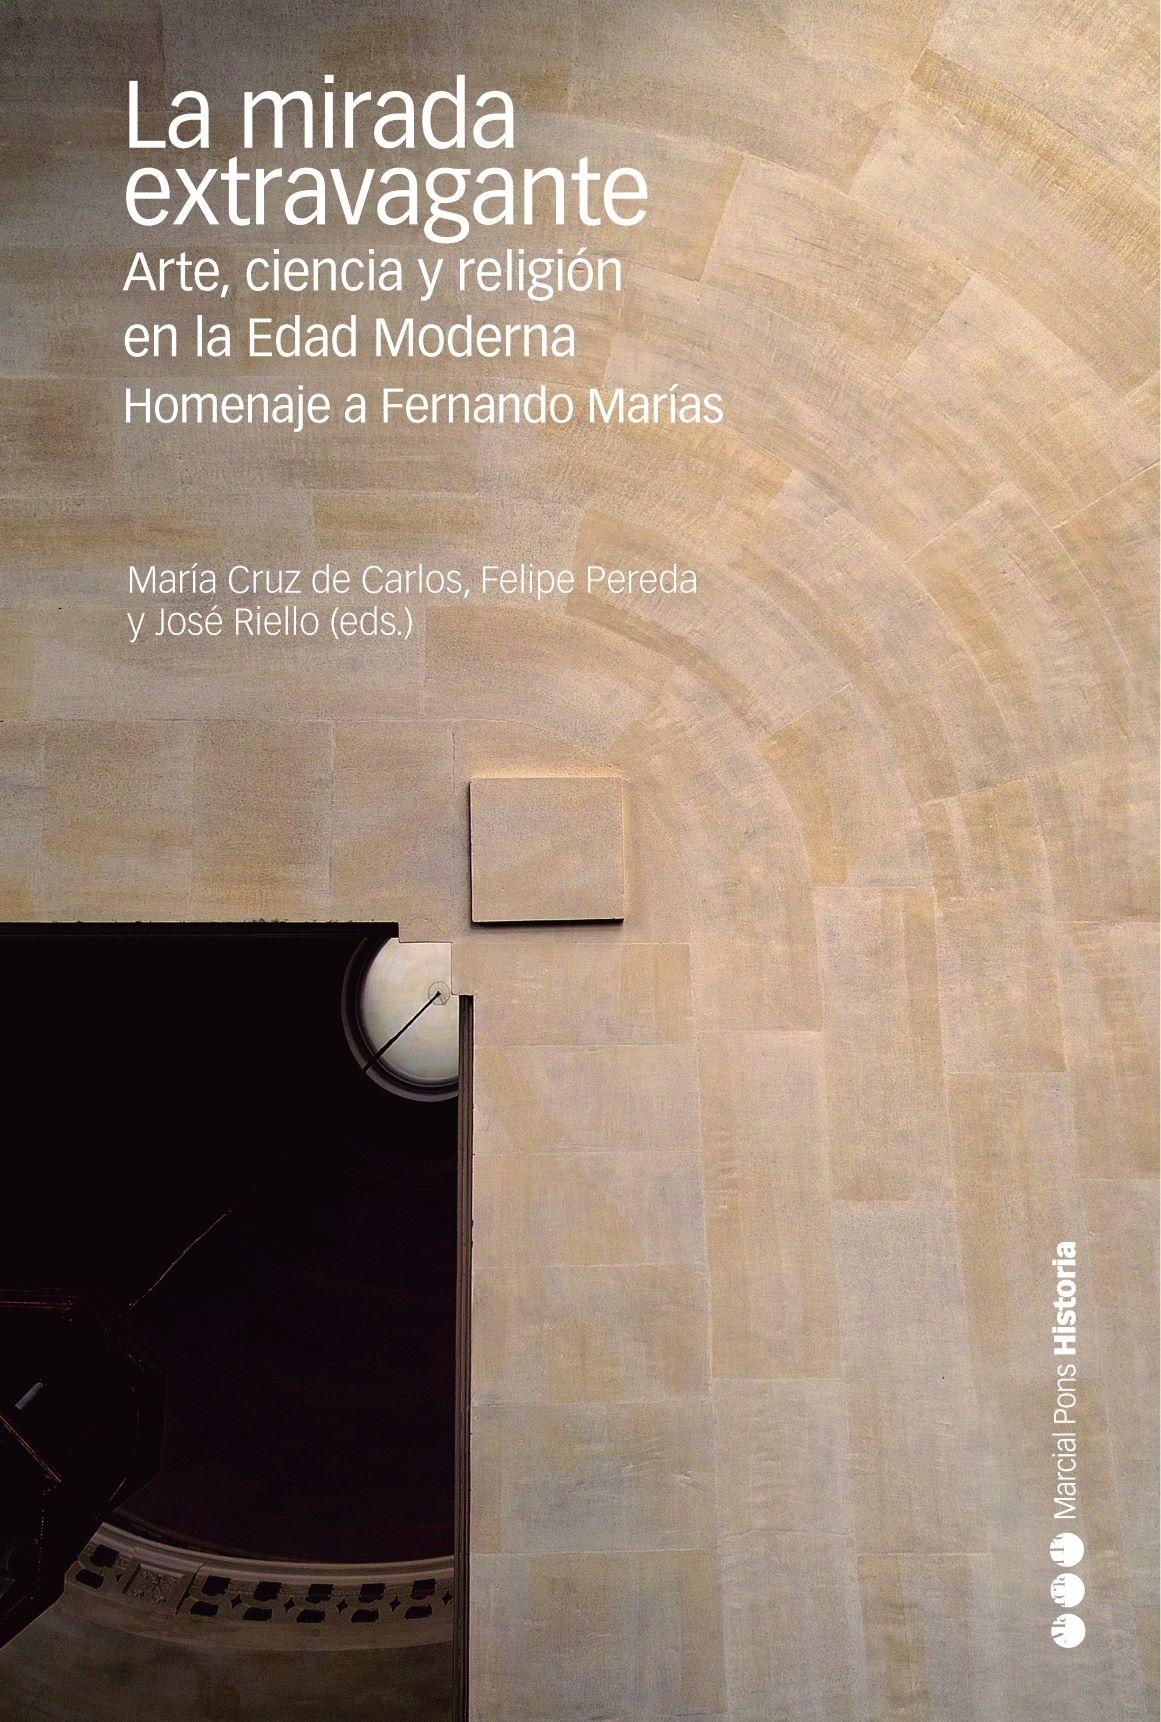 La mirada extravagante "Arte, ciencia y religión en la Edad Moderna. Homenaje a Fernando Marías". 